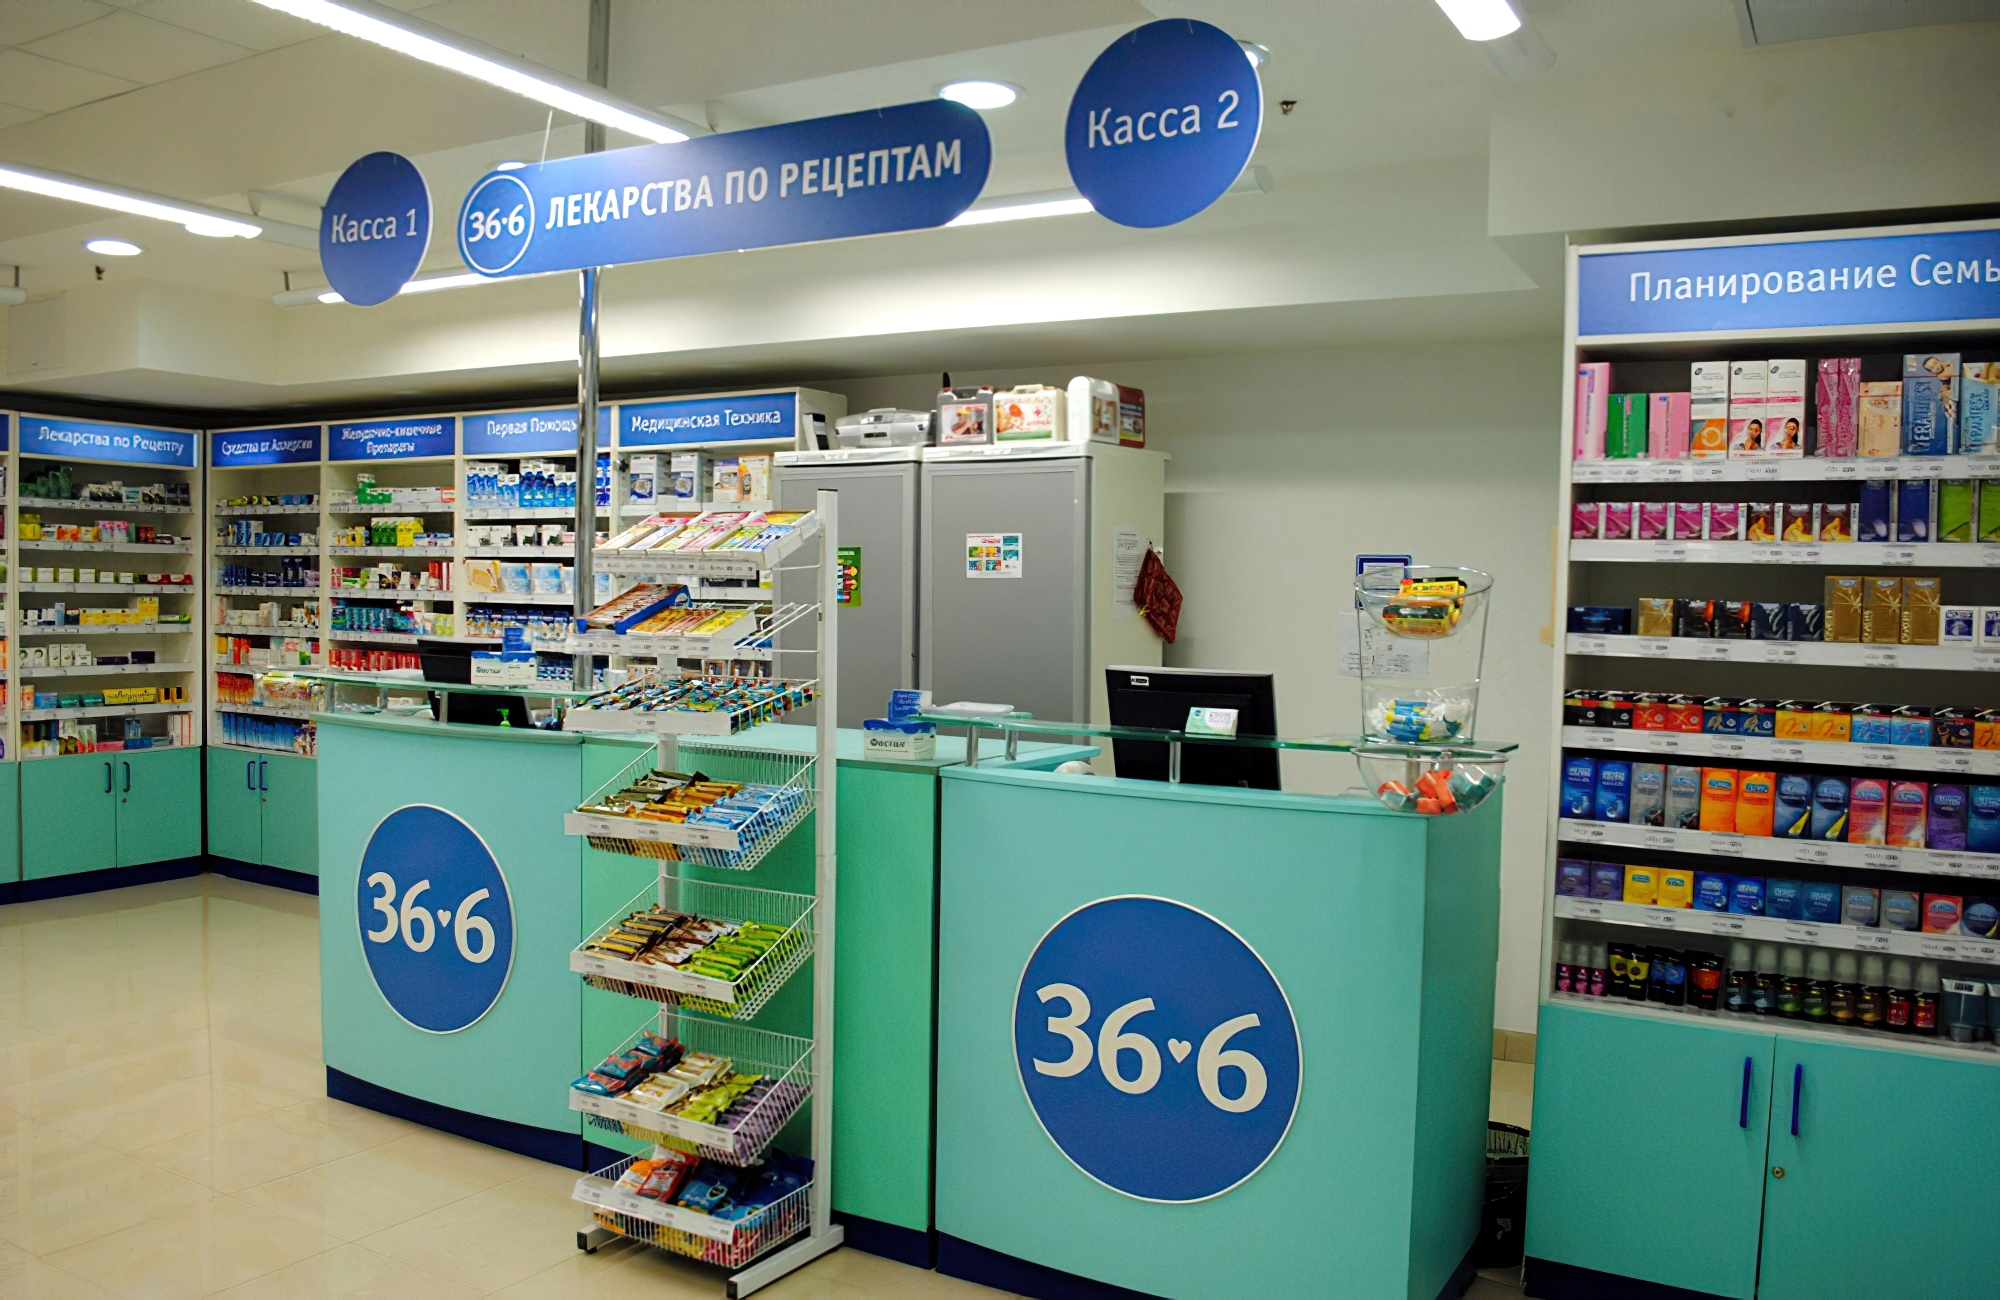 Аптечный бизнес в Москве и регионах